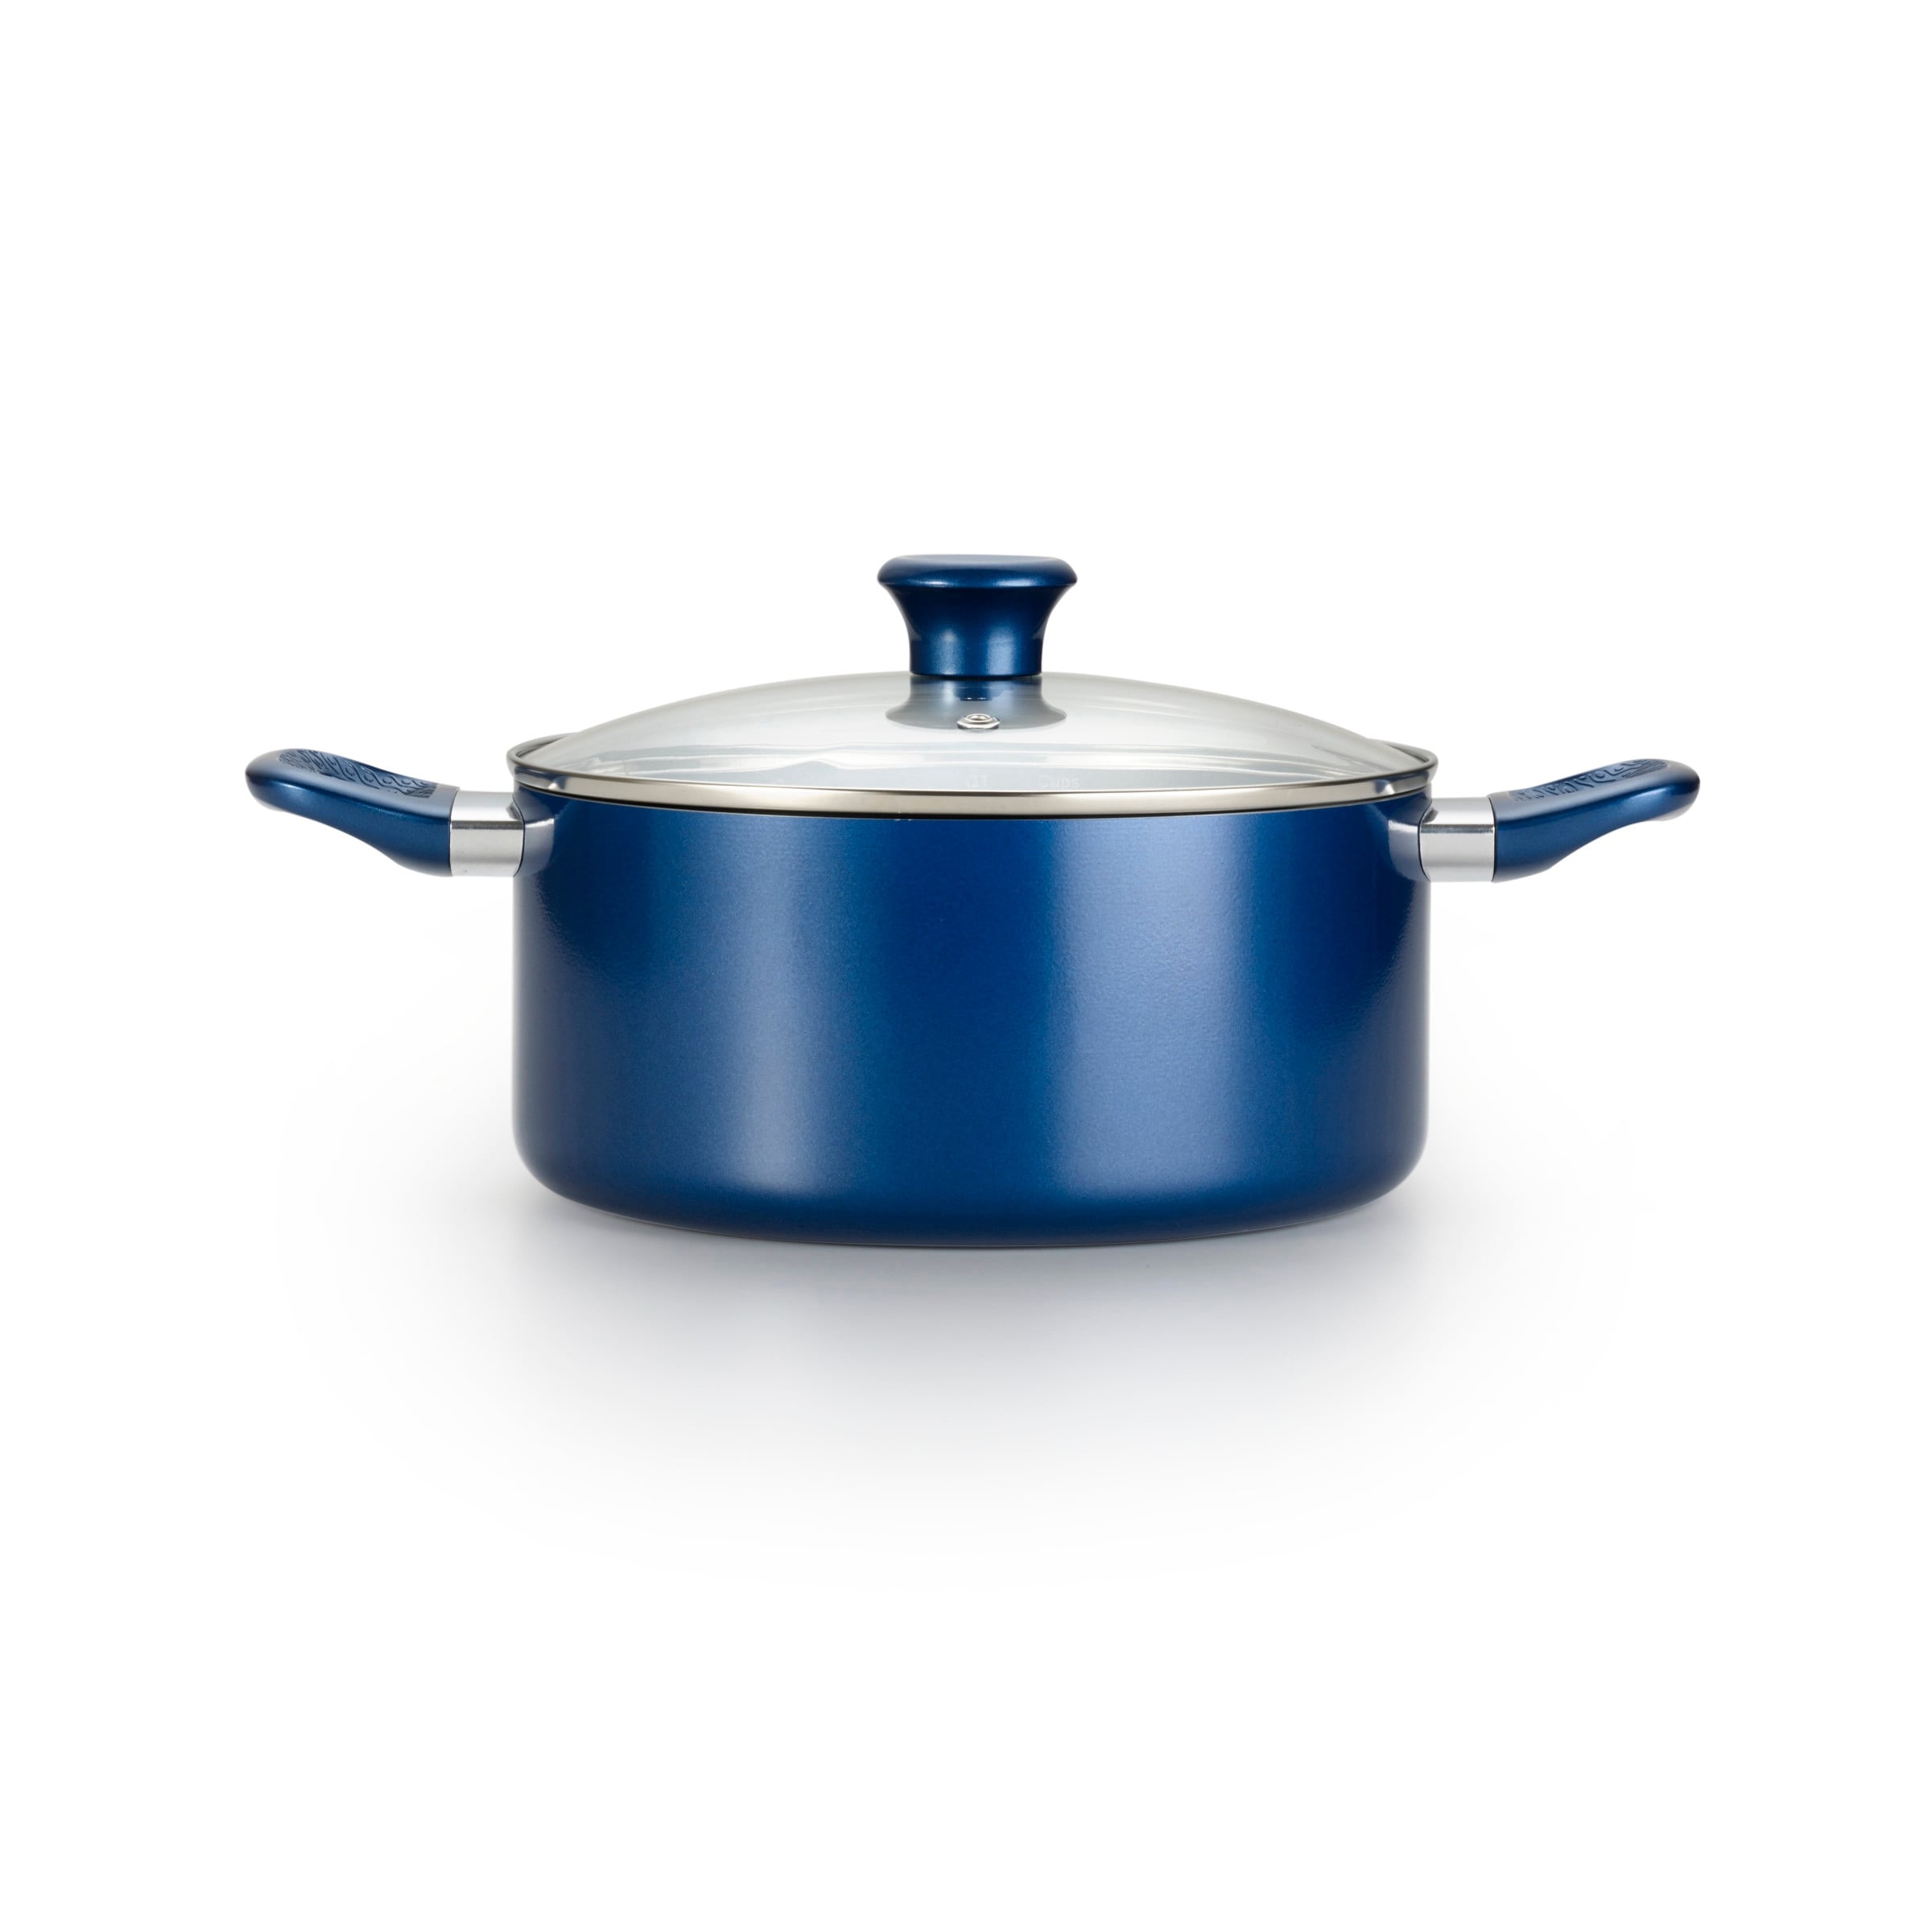 T-Fal C597SE64 Cook & Strain Non-Stick 14-Piece Cookware Set, Blue